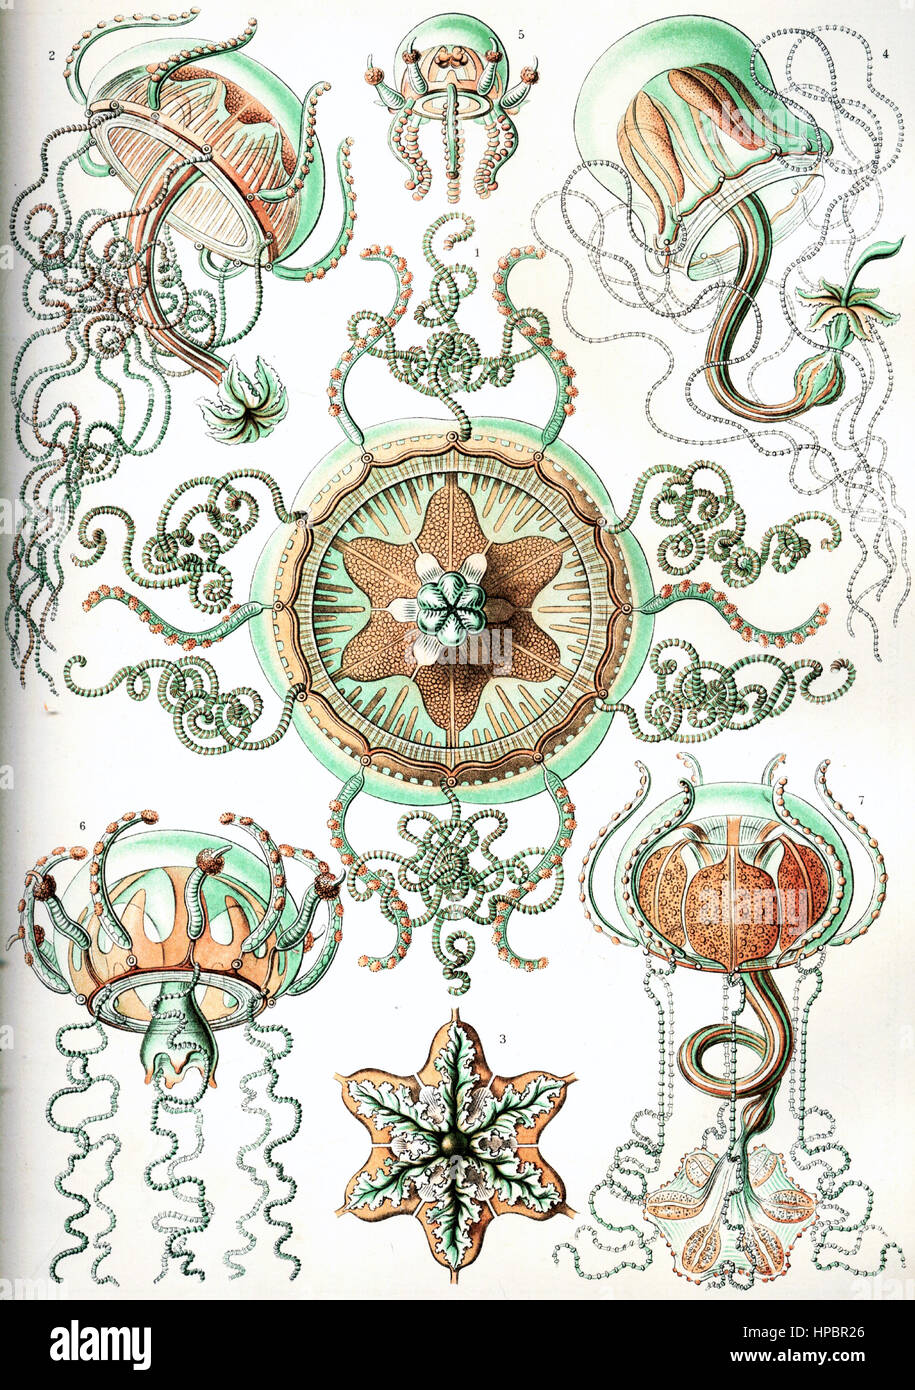 Par Trachomedusae ; Ernst Haeckel Kunstformen der Natur, 1900 Banque D'Images